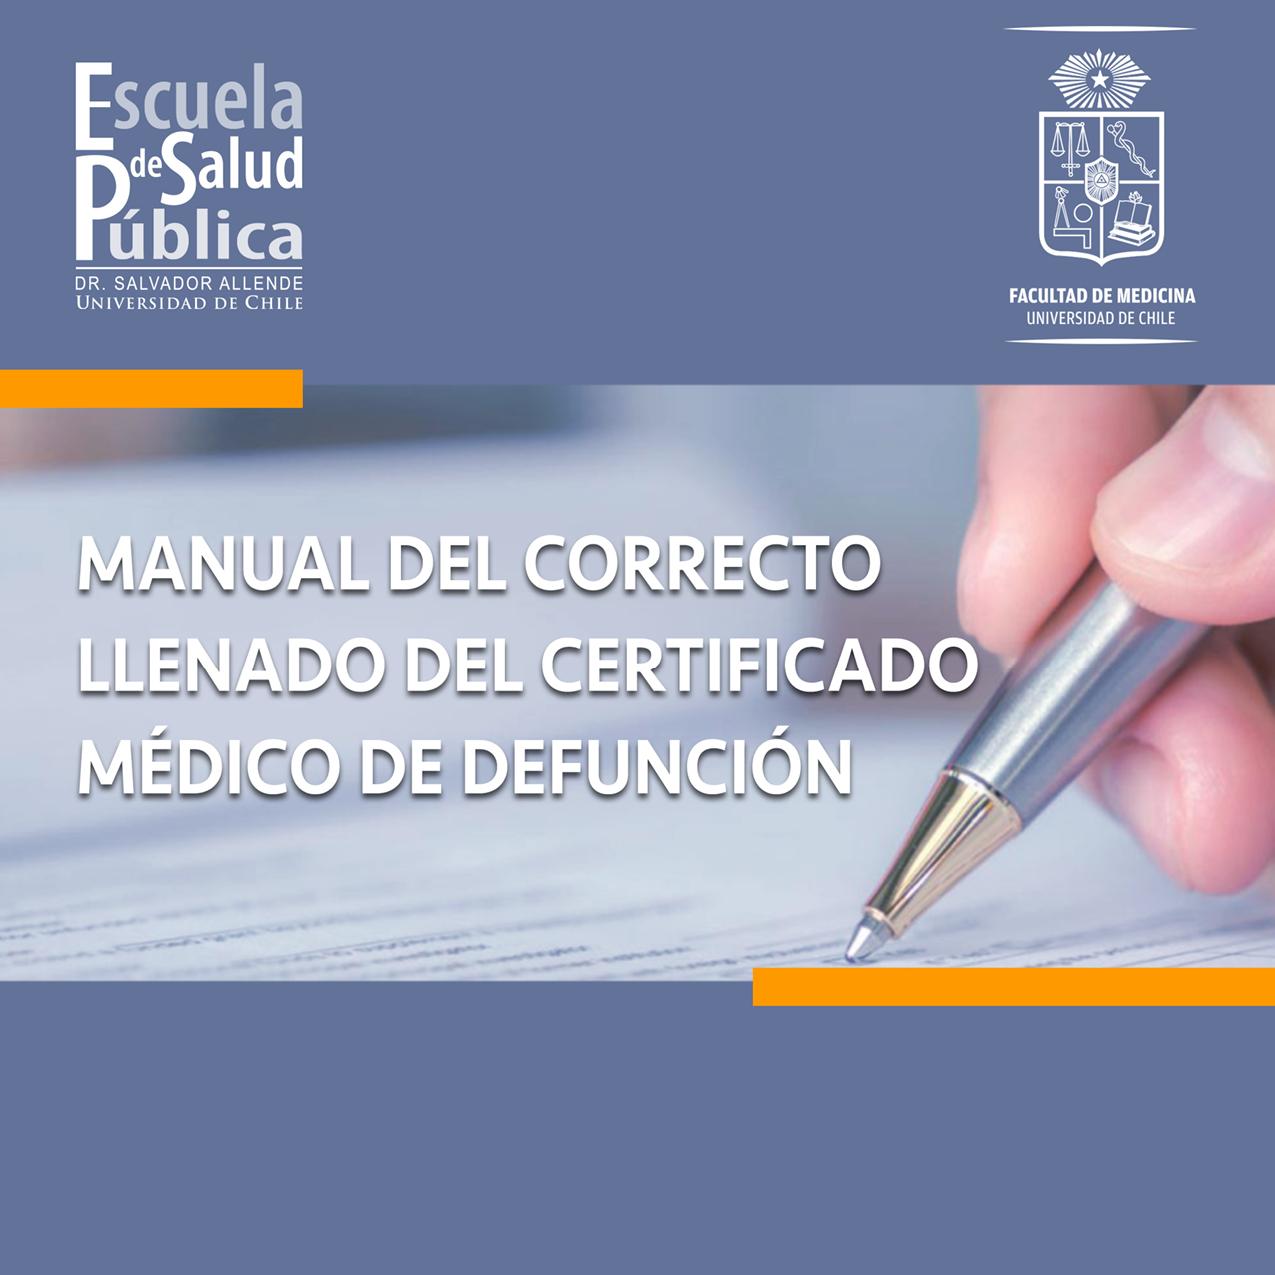 El Manual del correcto llenado del Certificado Médico de Defunción (CMD) está dirigido principalmente a médicos y estudiantes de medicina, quienes son o serán los responsables de completar el CMD.